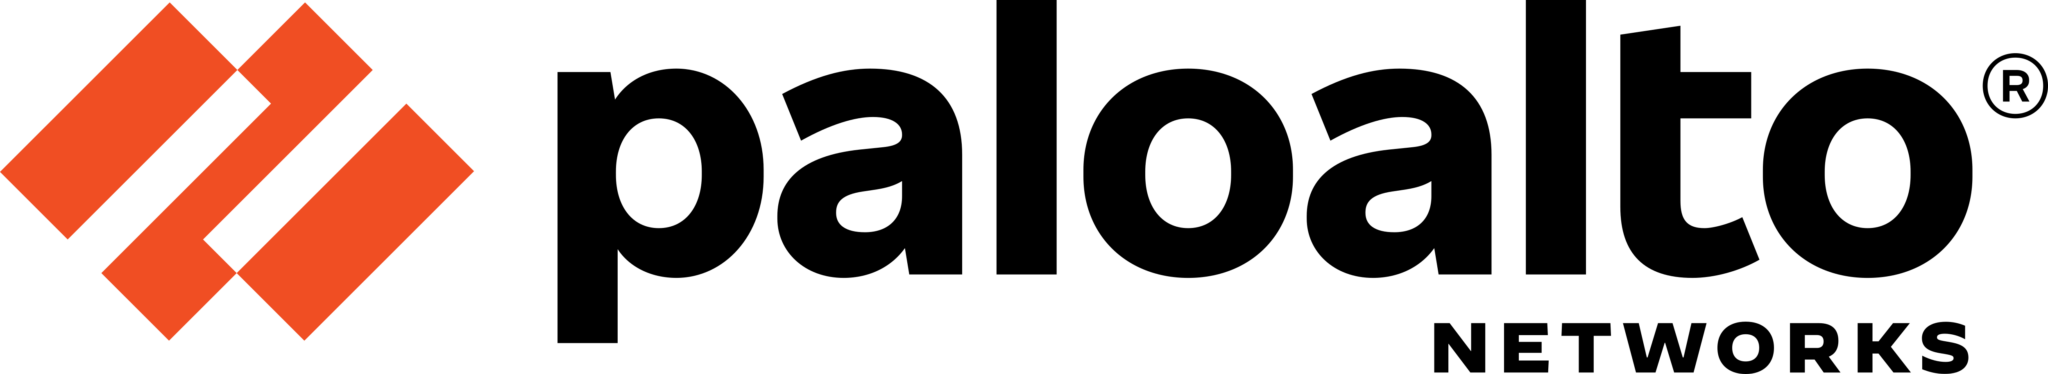 Palo Alto Networks – pobierz logo